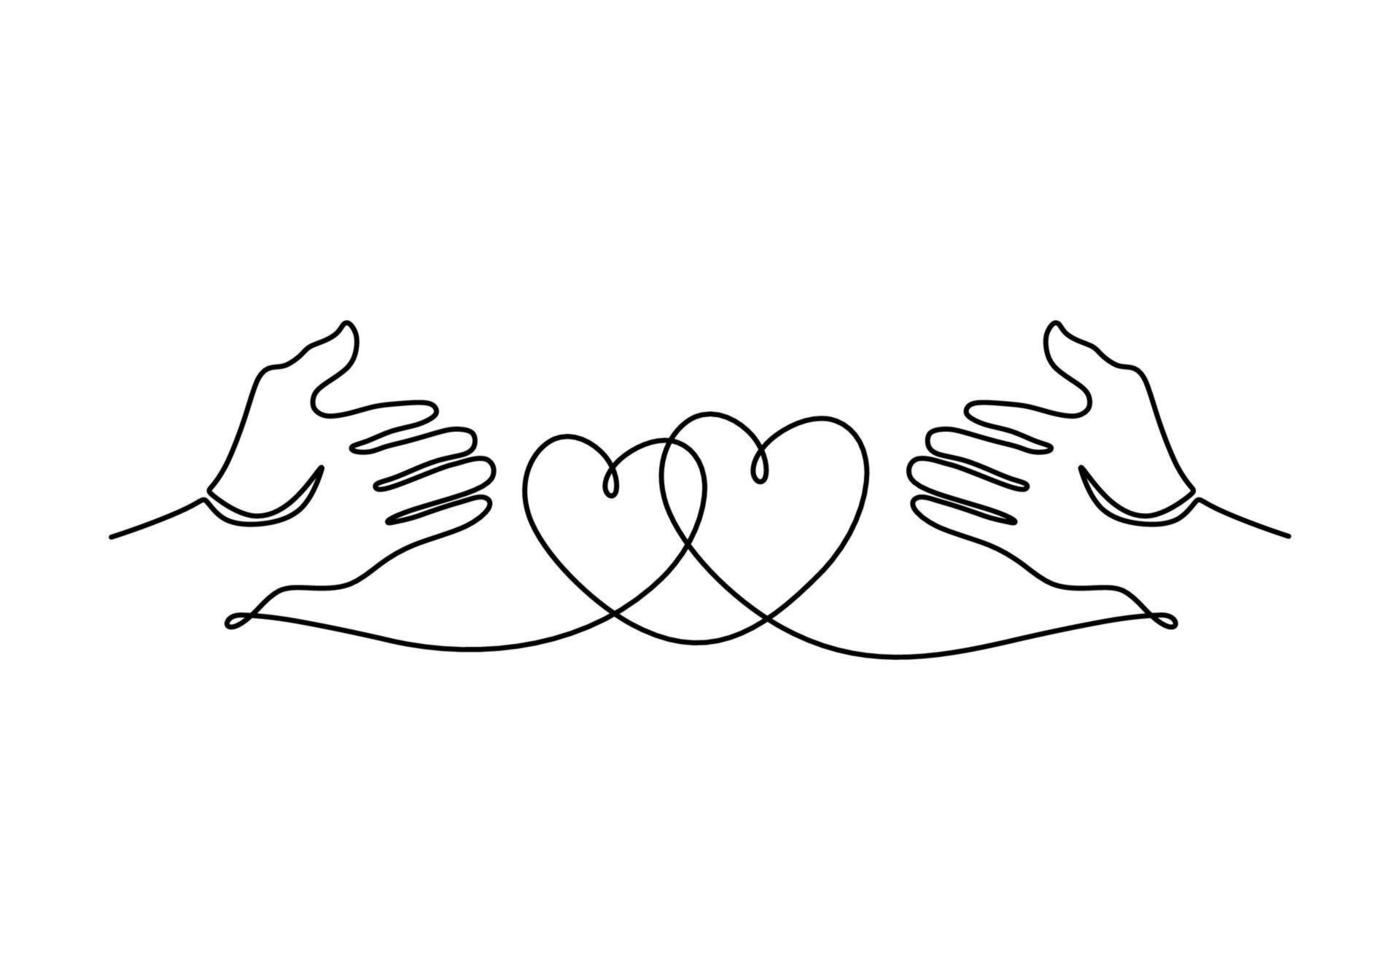 dibujo continuo de una sola línea de dos manos abiertas con forma de  corazón 3462846 Vector en Vecteezy